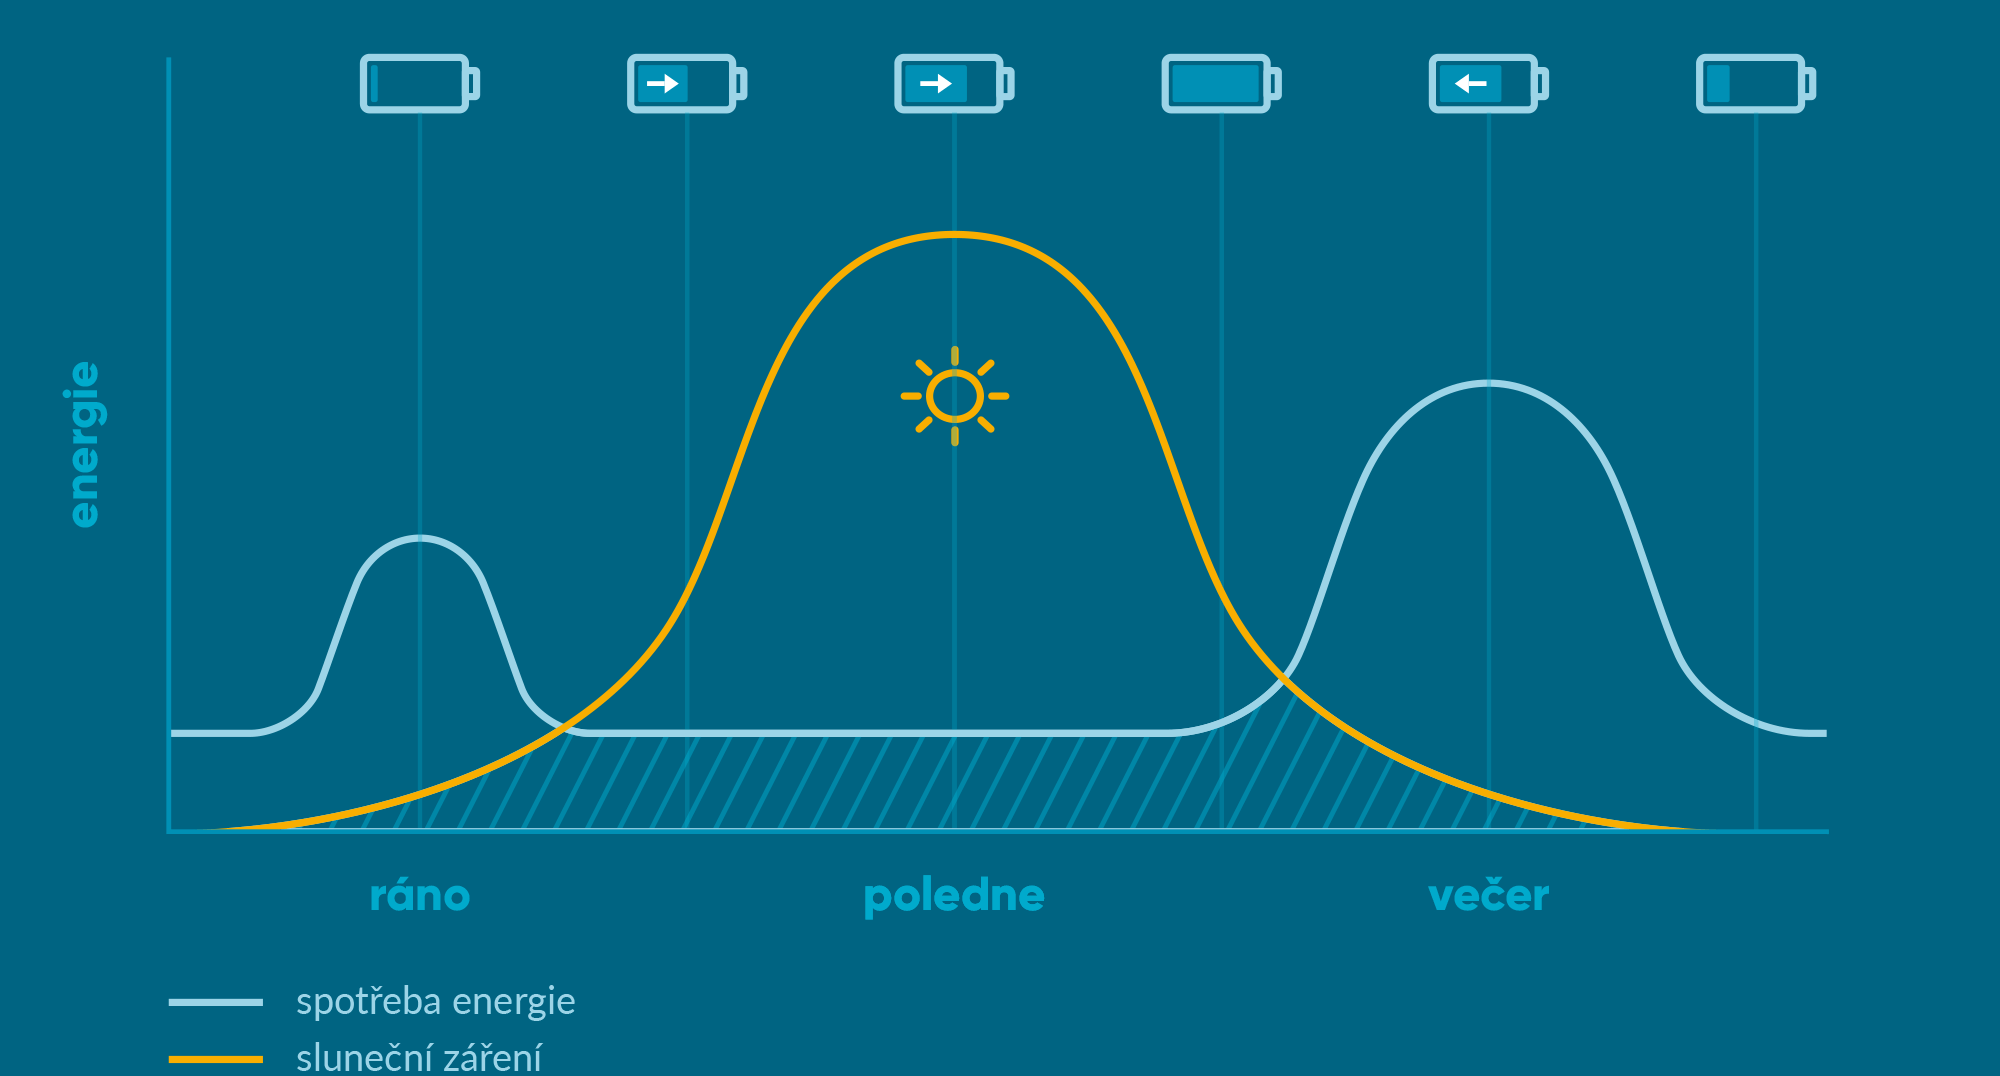 Pokrytí spotřeby energie v průběhu dne díky energii ze slunečního záření